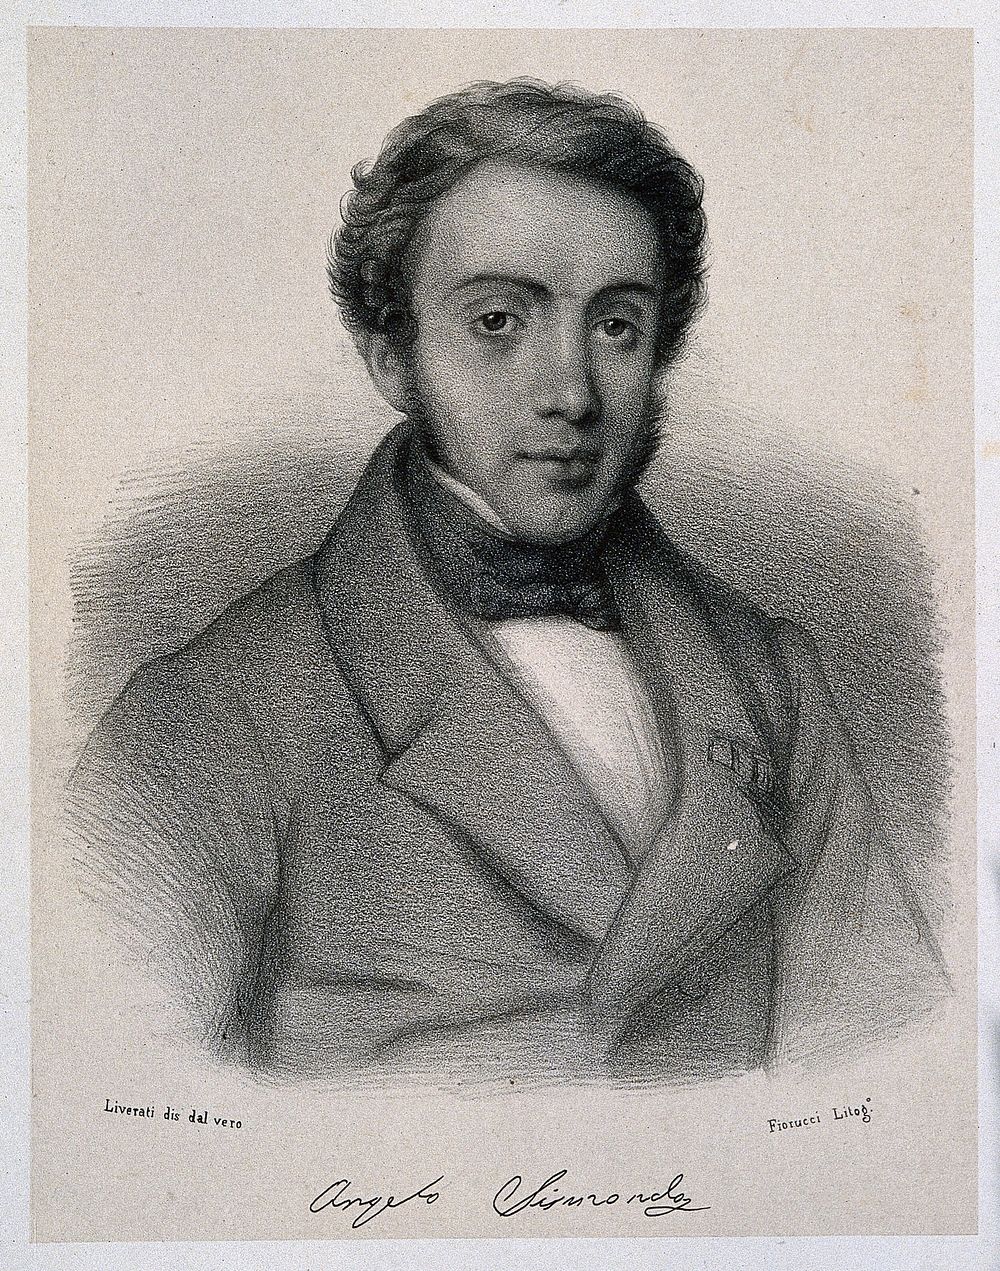 Angelo Sismondi. Lithograph by L. Fiorucci after C. E. Liverati, 1841.